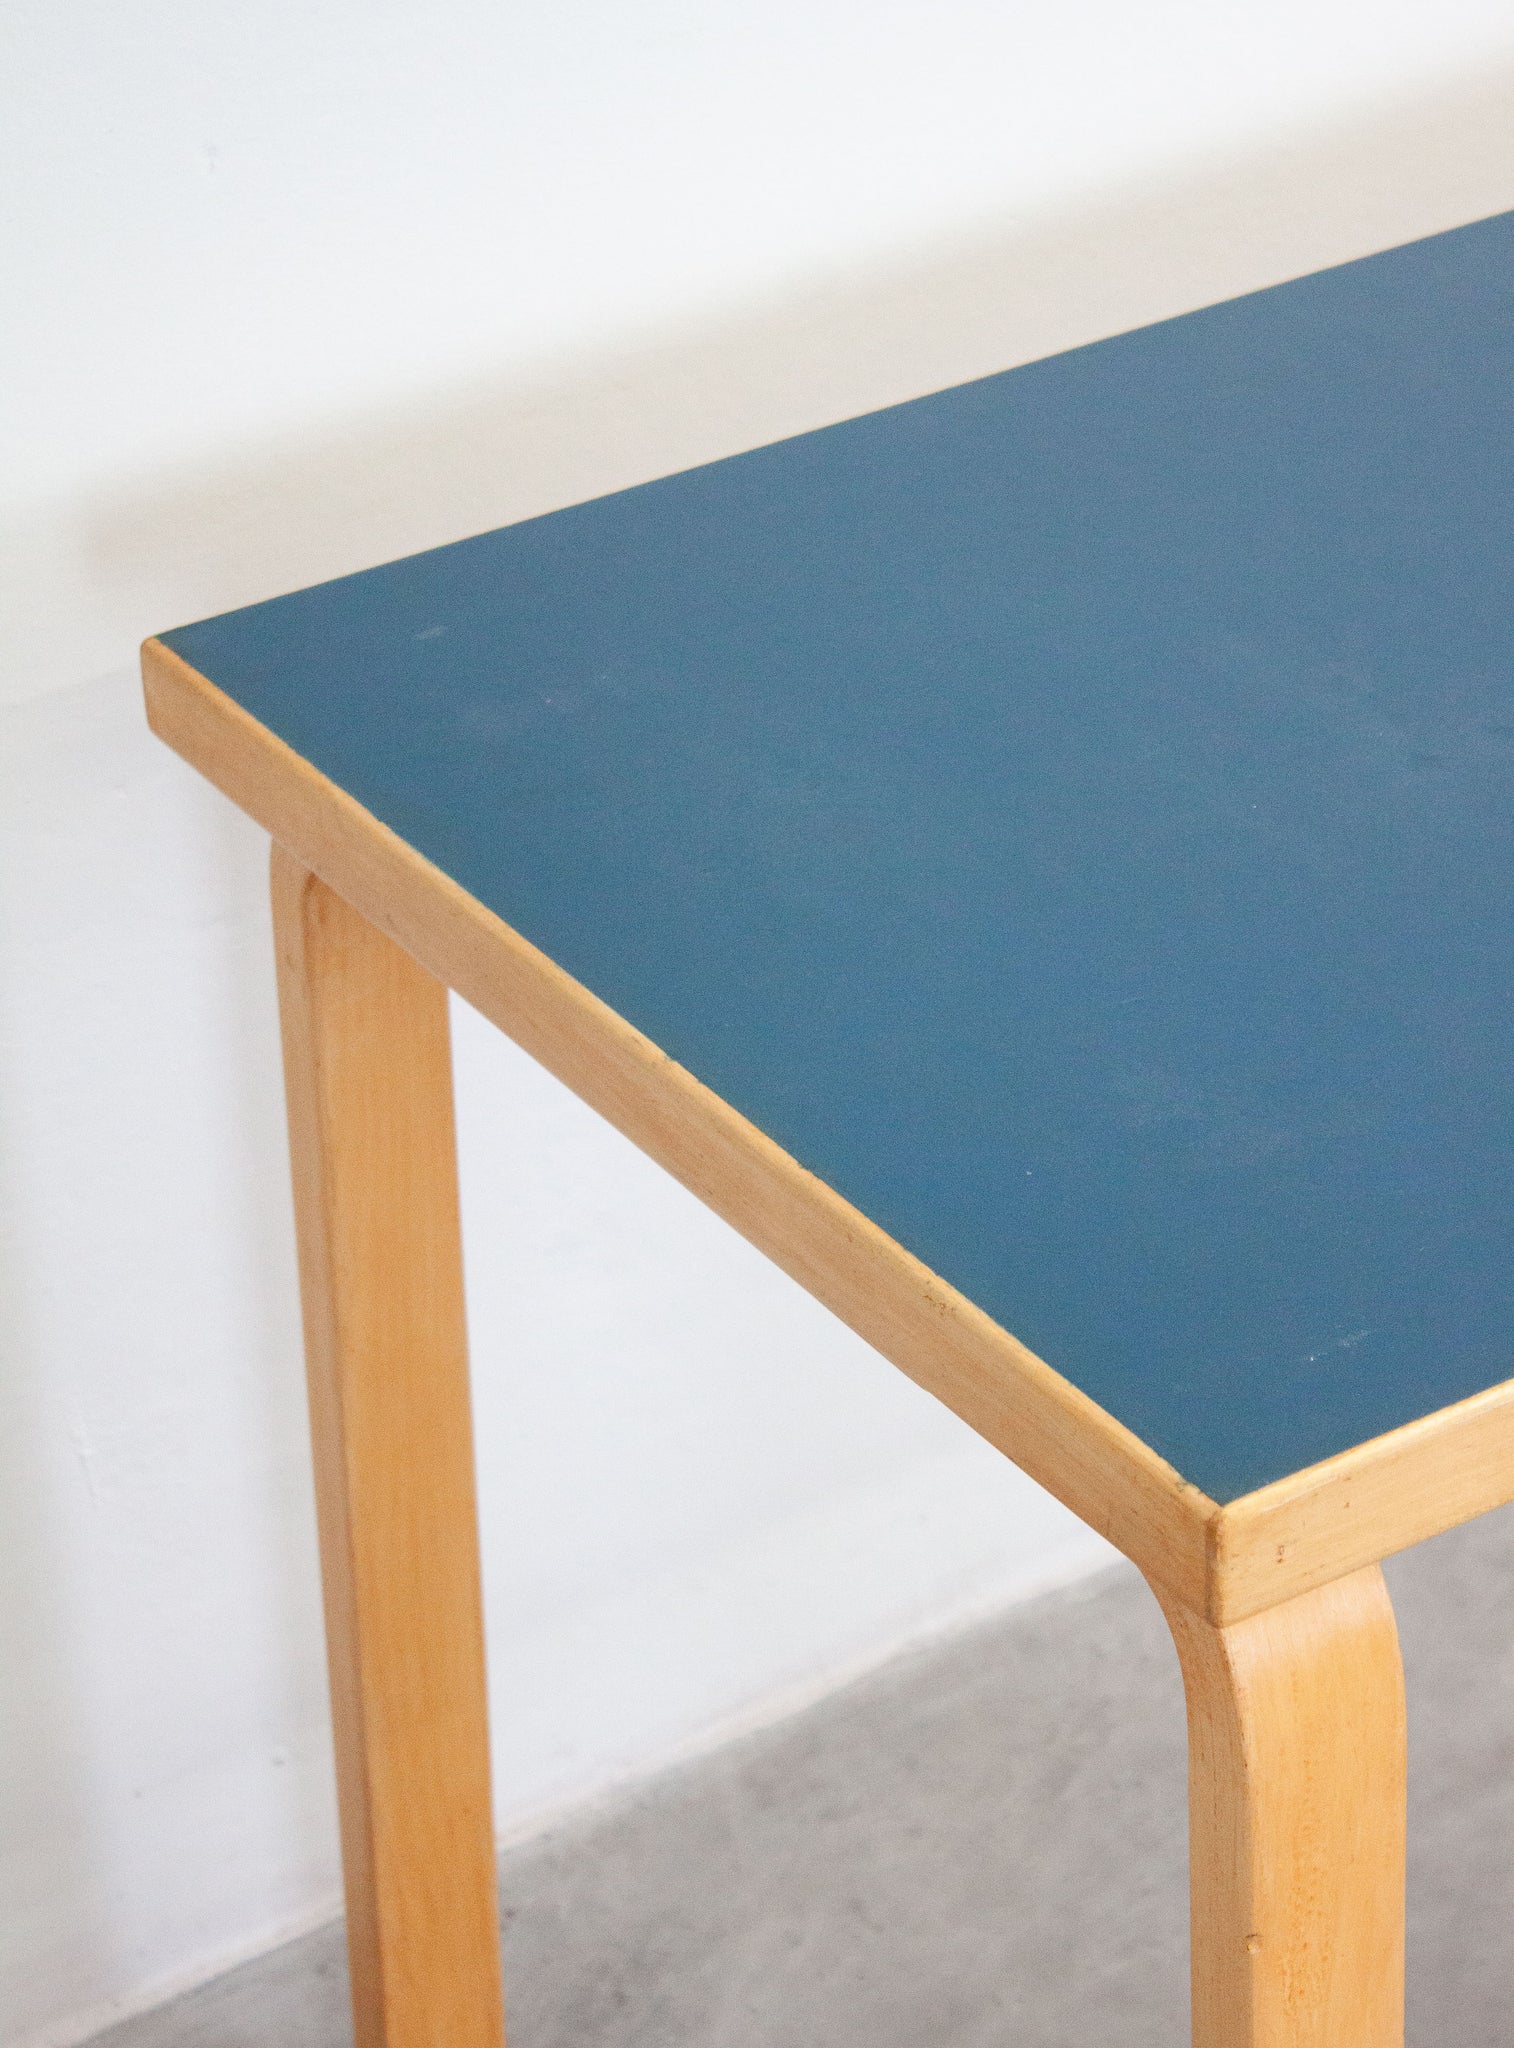 Artek Model 81 Table or Desk by Alvar Aalto